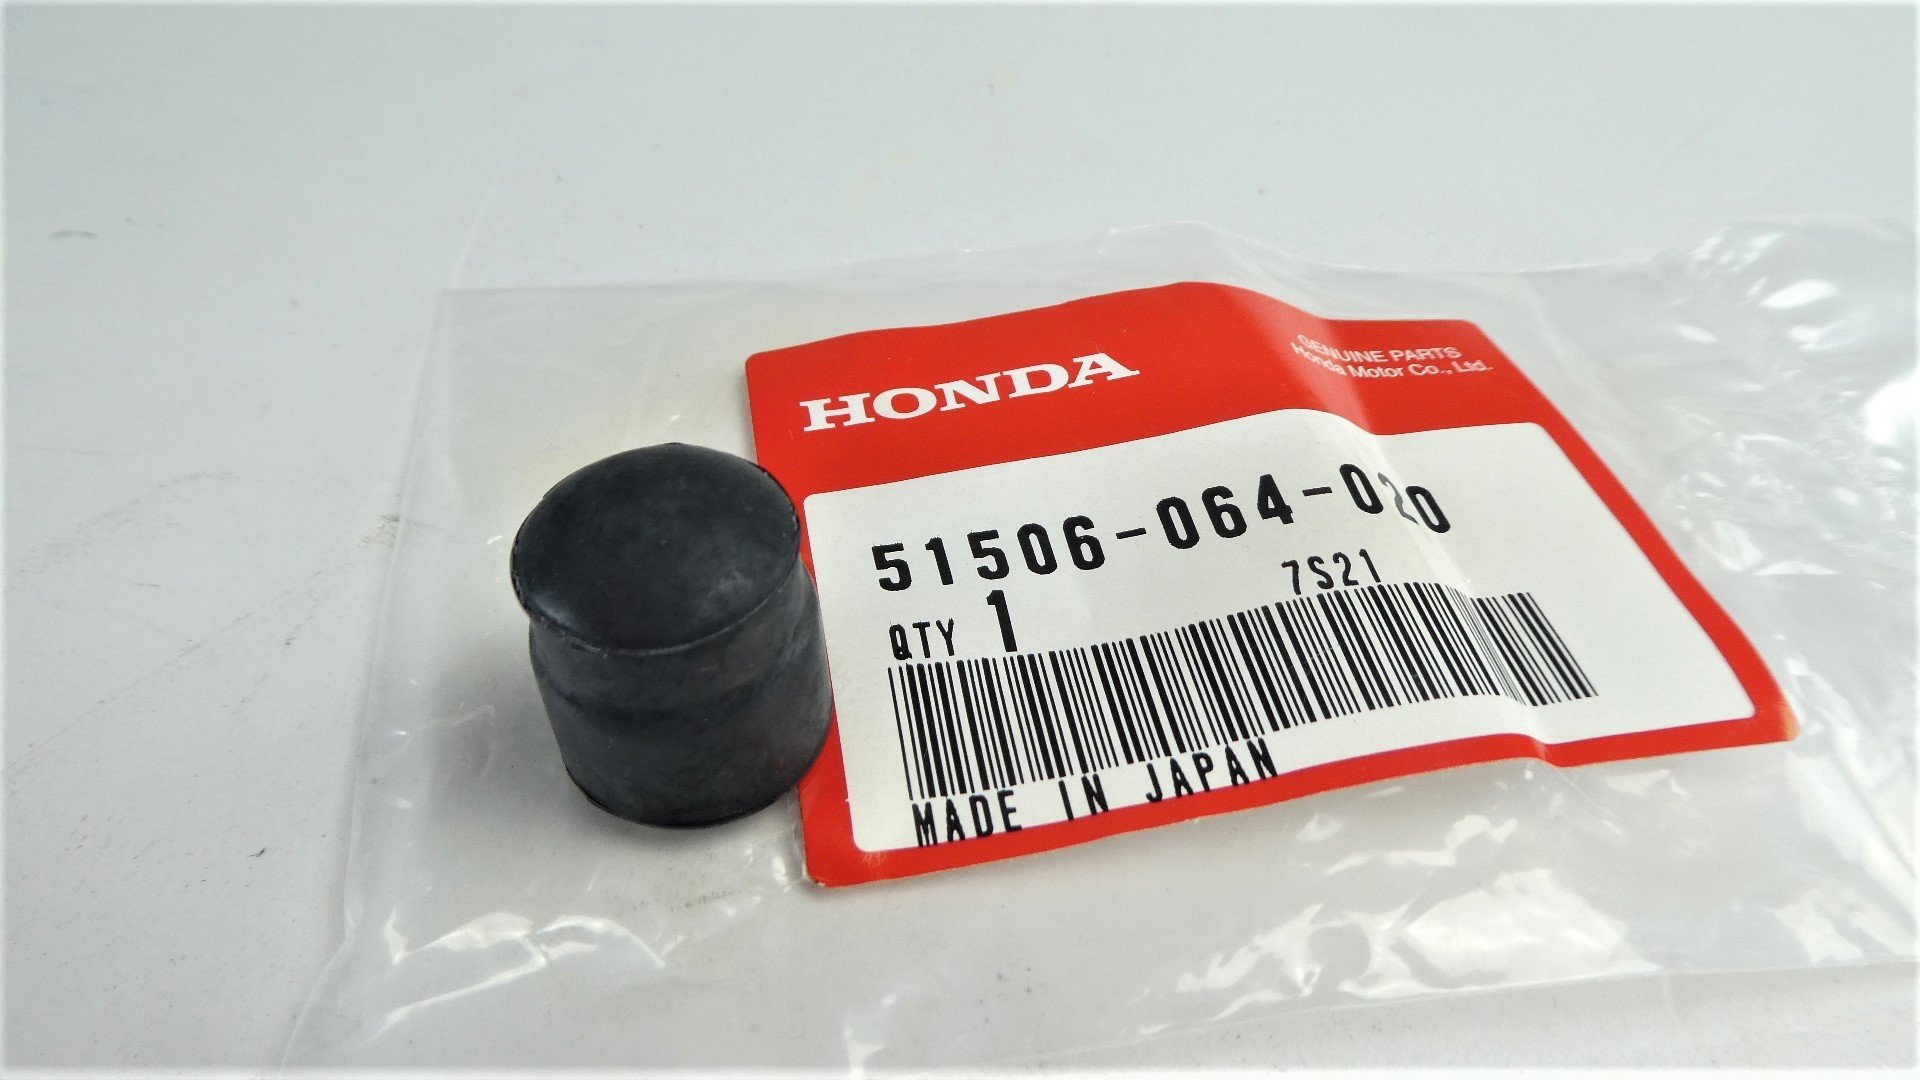 Gabelrohre Gabeleinsätze für Honda Monkey Z50 6 Volt Hochwertig